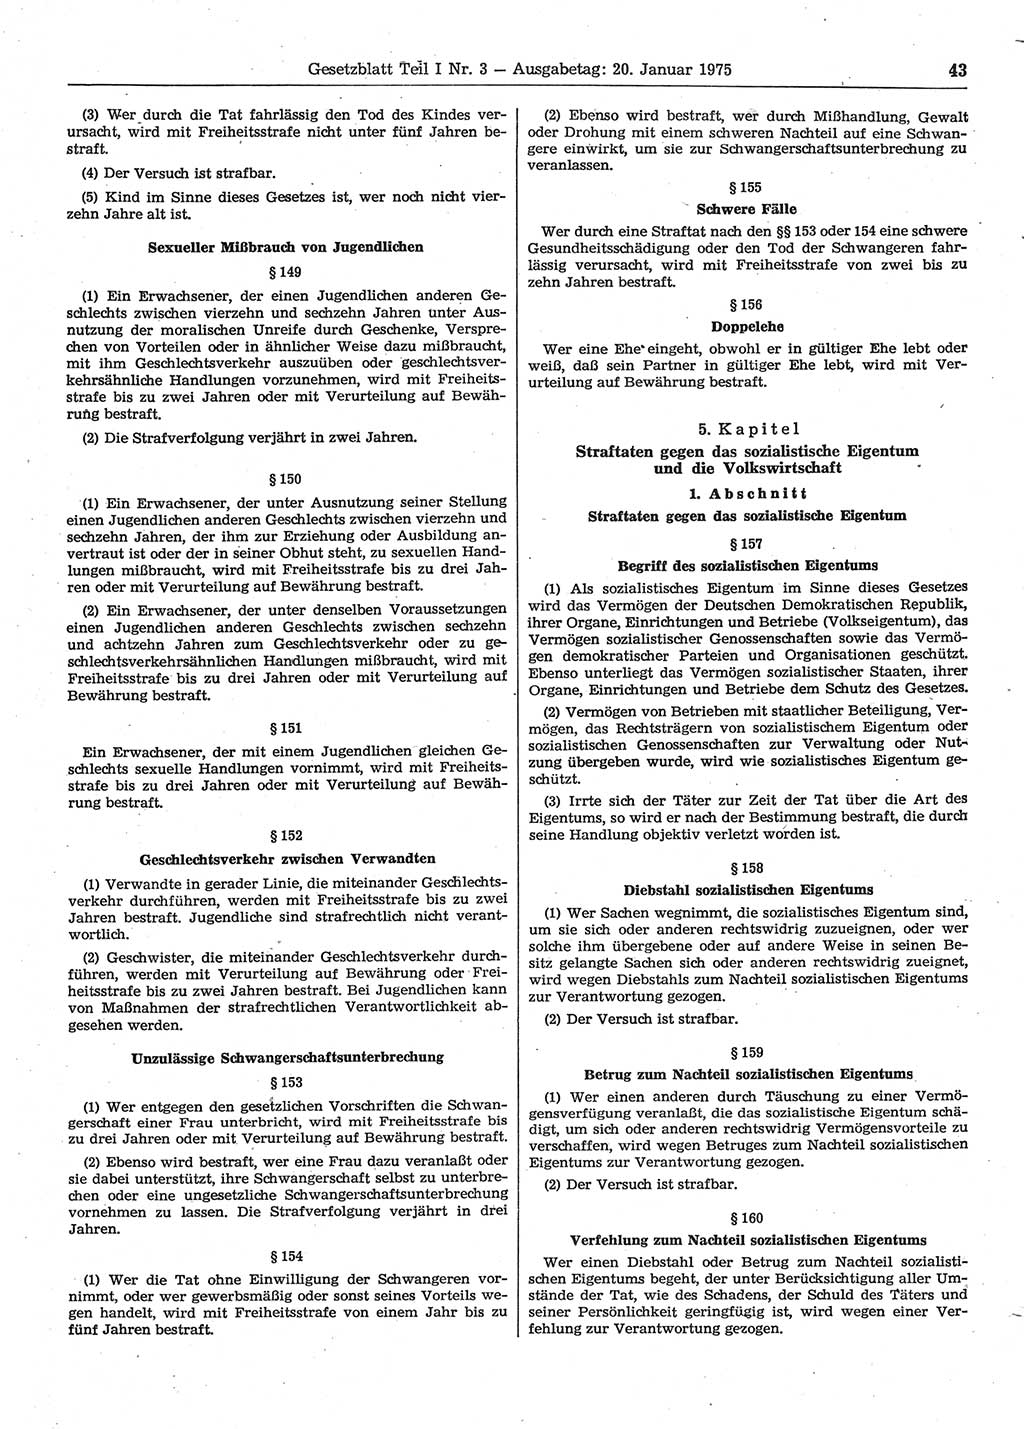 Gesetzblatt (GBl.) der Deutschen Demokratischen Republik (DDR) Teil Ⅰ 1975, Seite 43 (GBl. DDR Ⅰ 1975, S. 43)